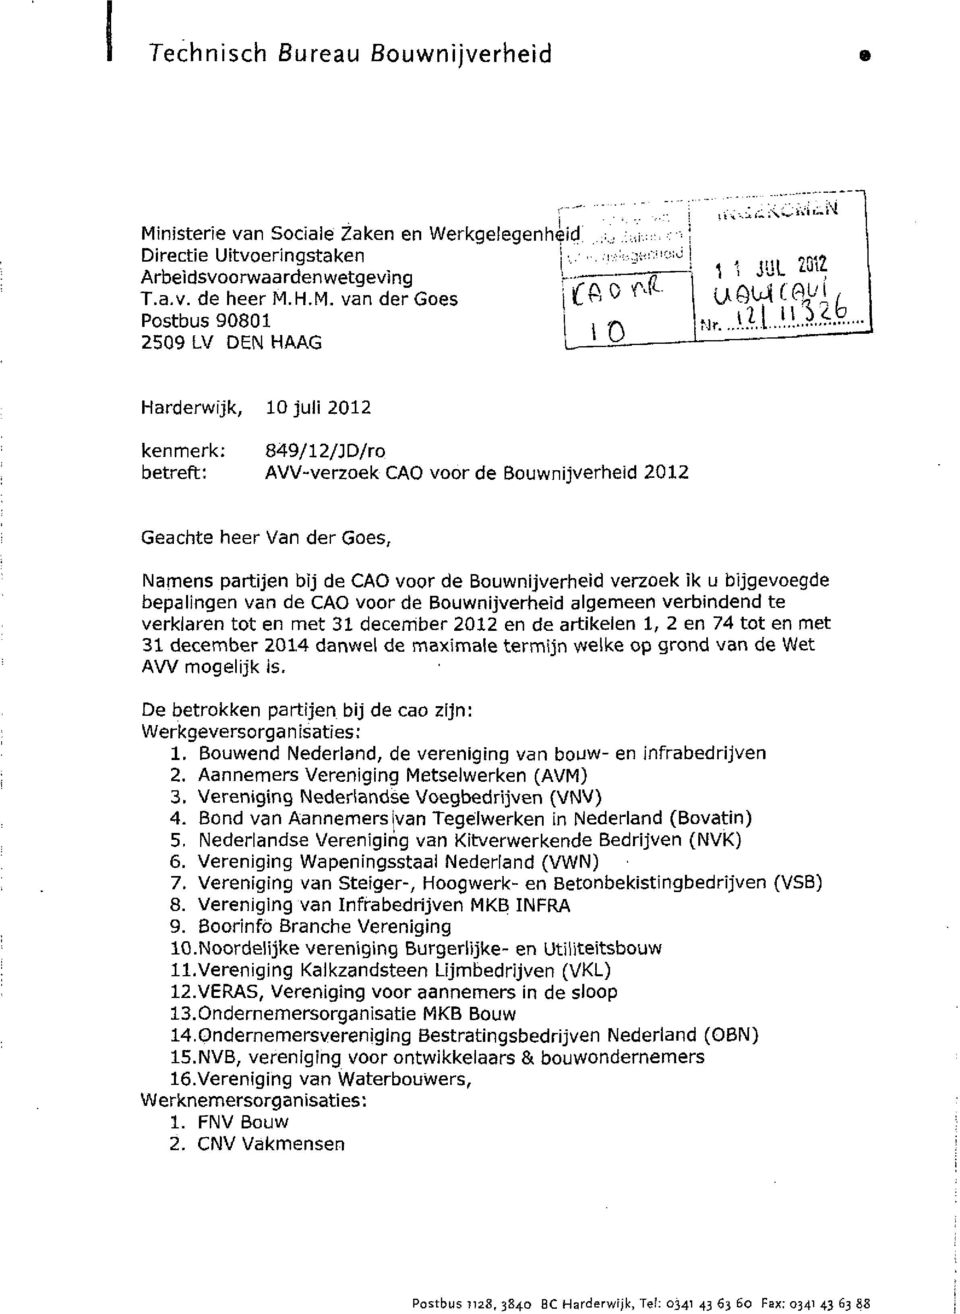 N Harderwijk, 10 juli 2012 kenmerk: 849/12/JD/ro betreft: AVV verzoek CAO voor de Bouwnijverheid 2012 Geachte heer Van der Goes, Namens partijen bij de CAO voor de Bouwnijverheid verzoek ik u